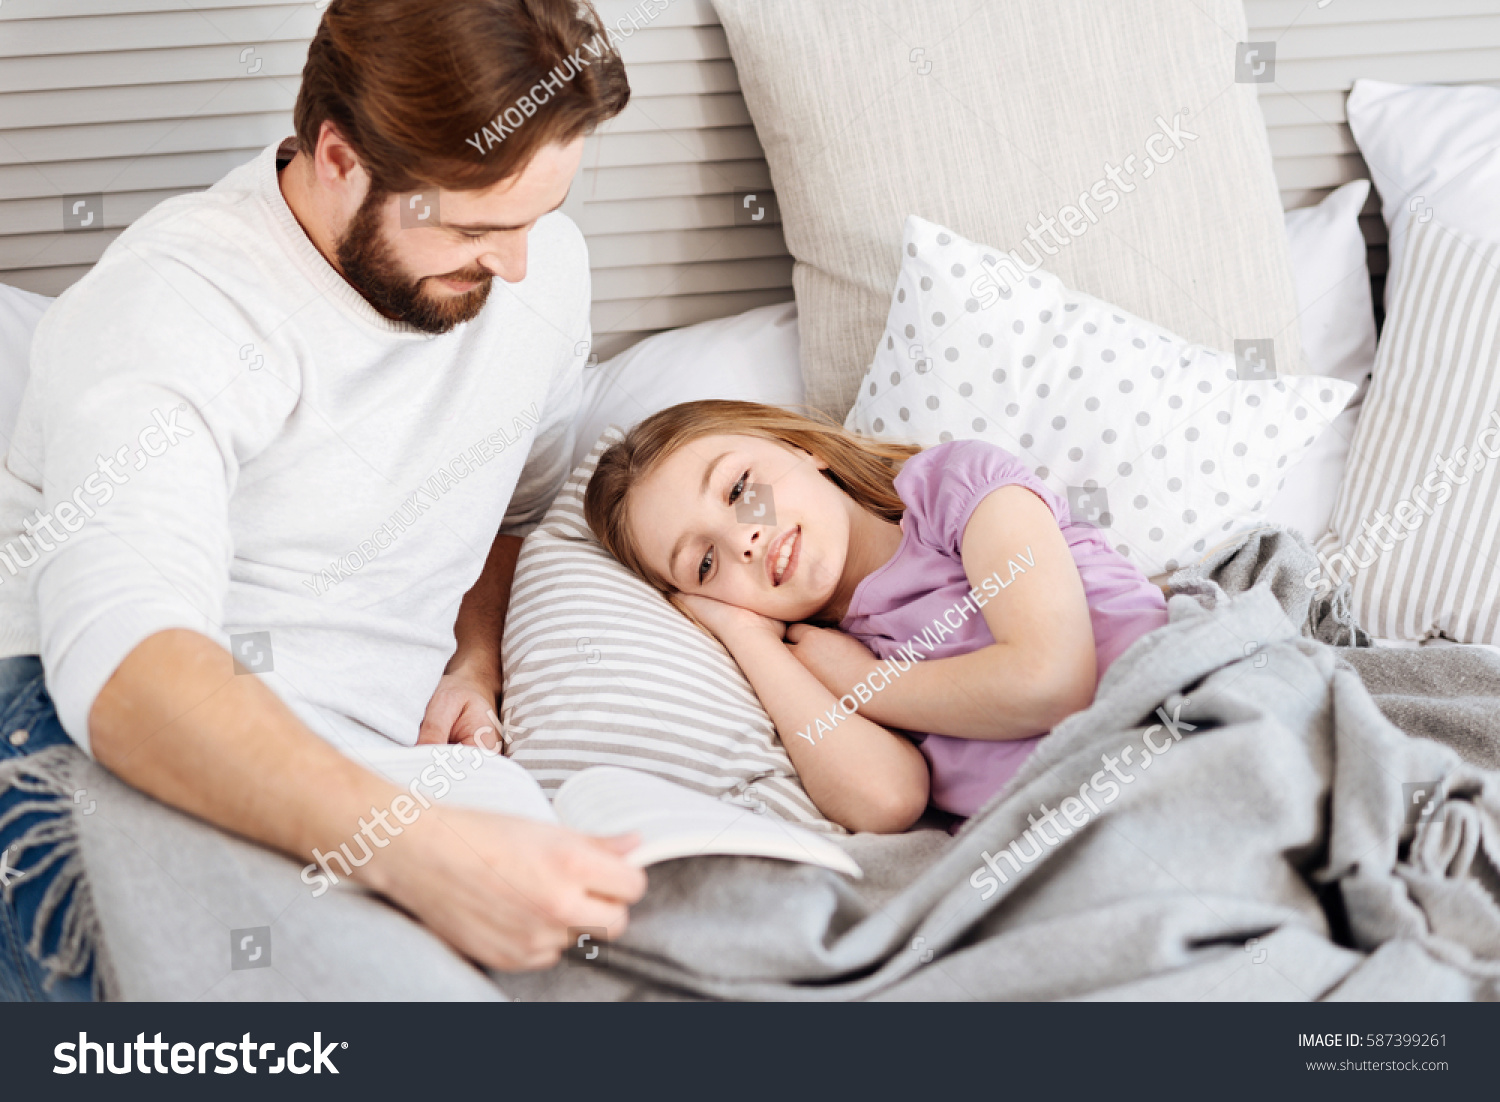 Девочка с папой в кровати